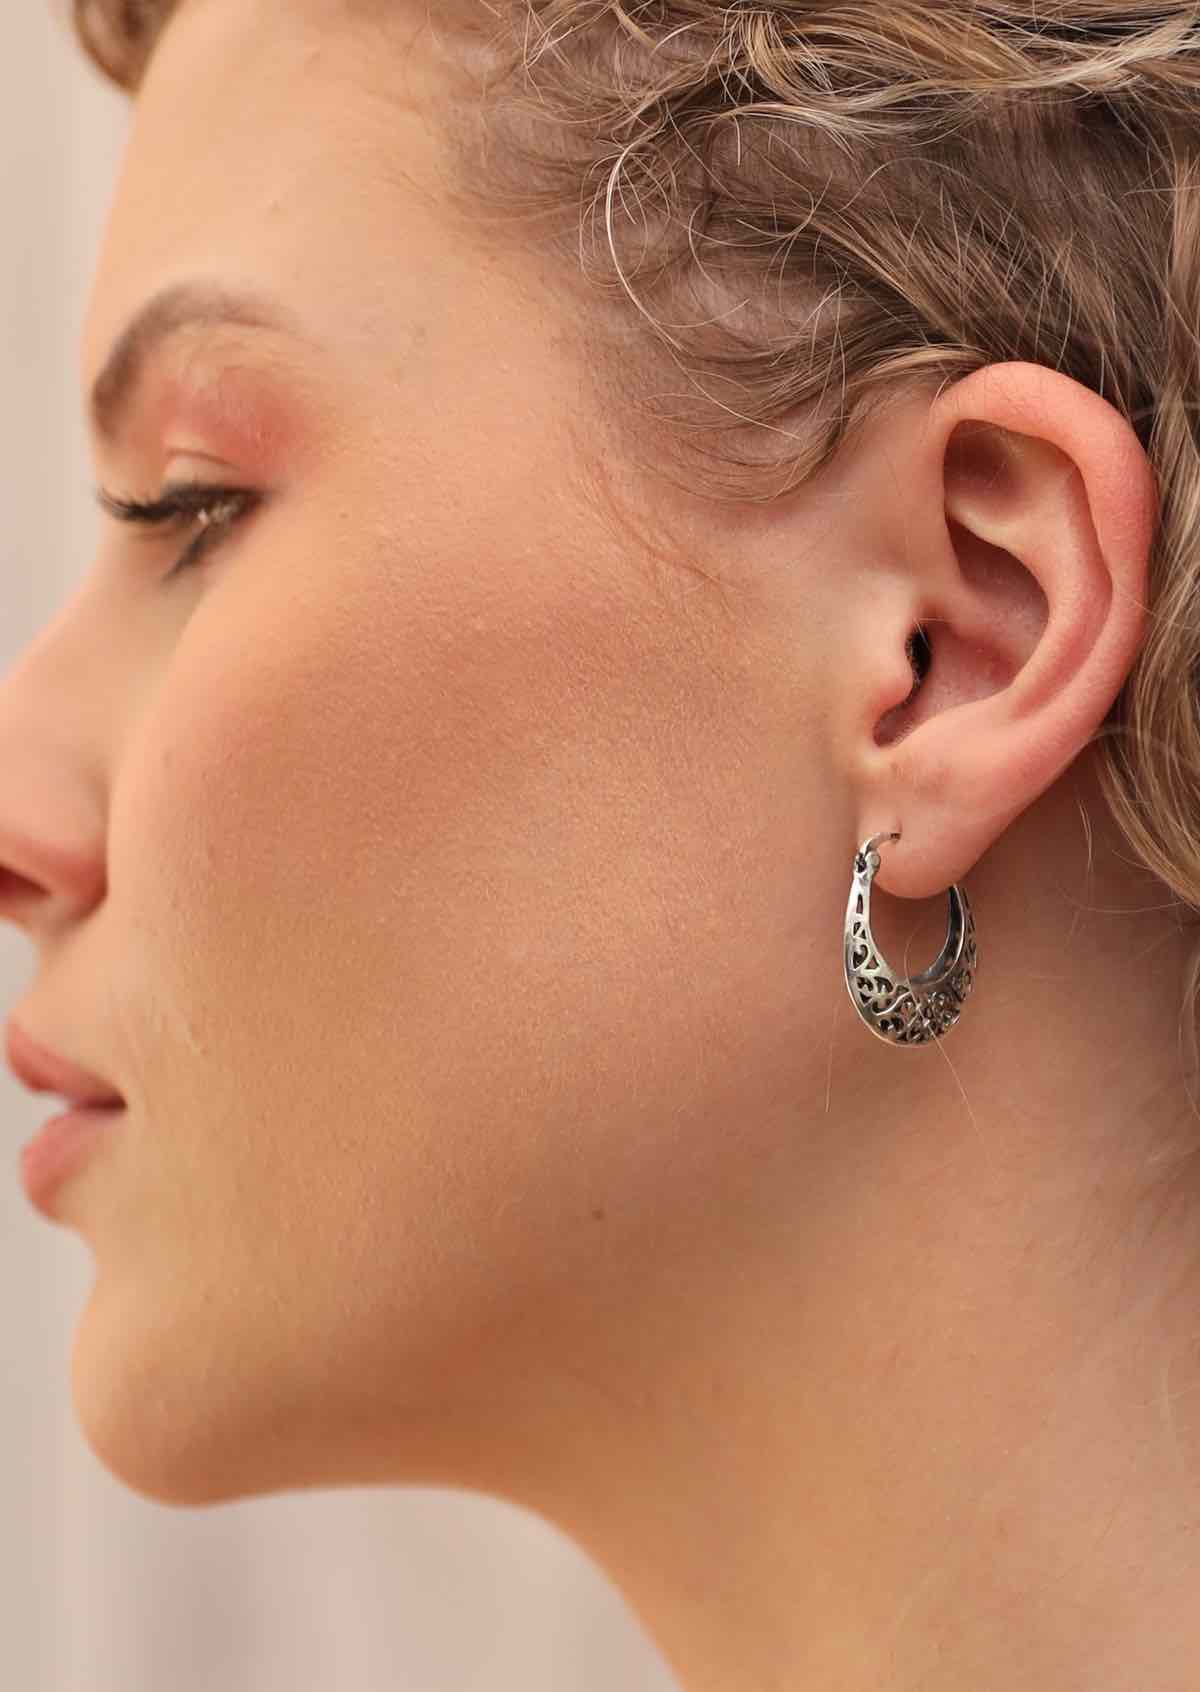 silver hoop earrings on woman's ear